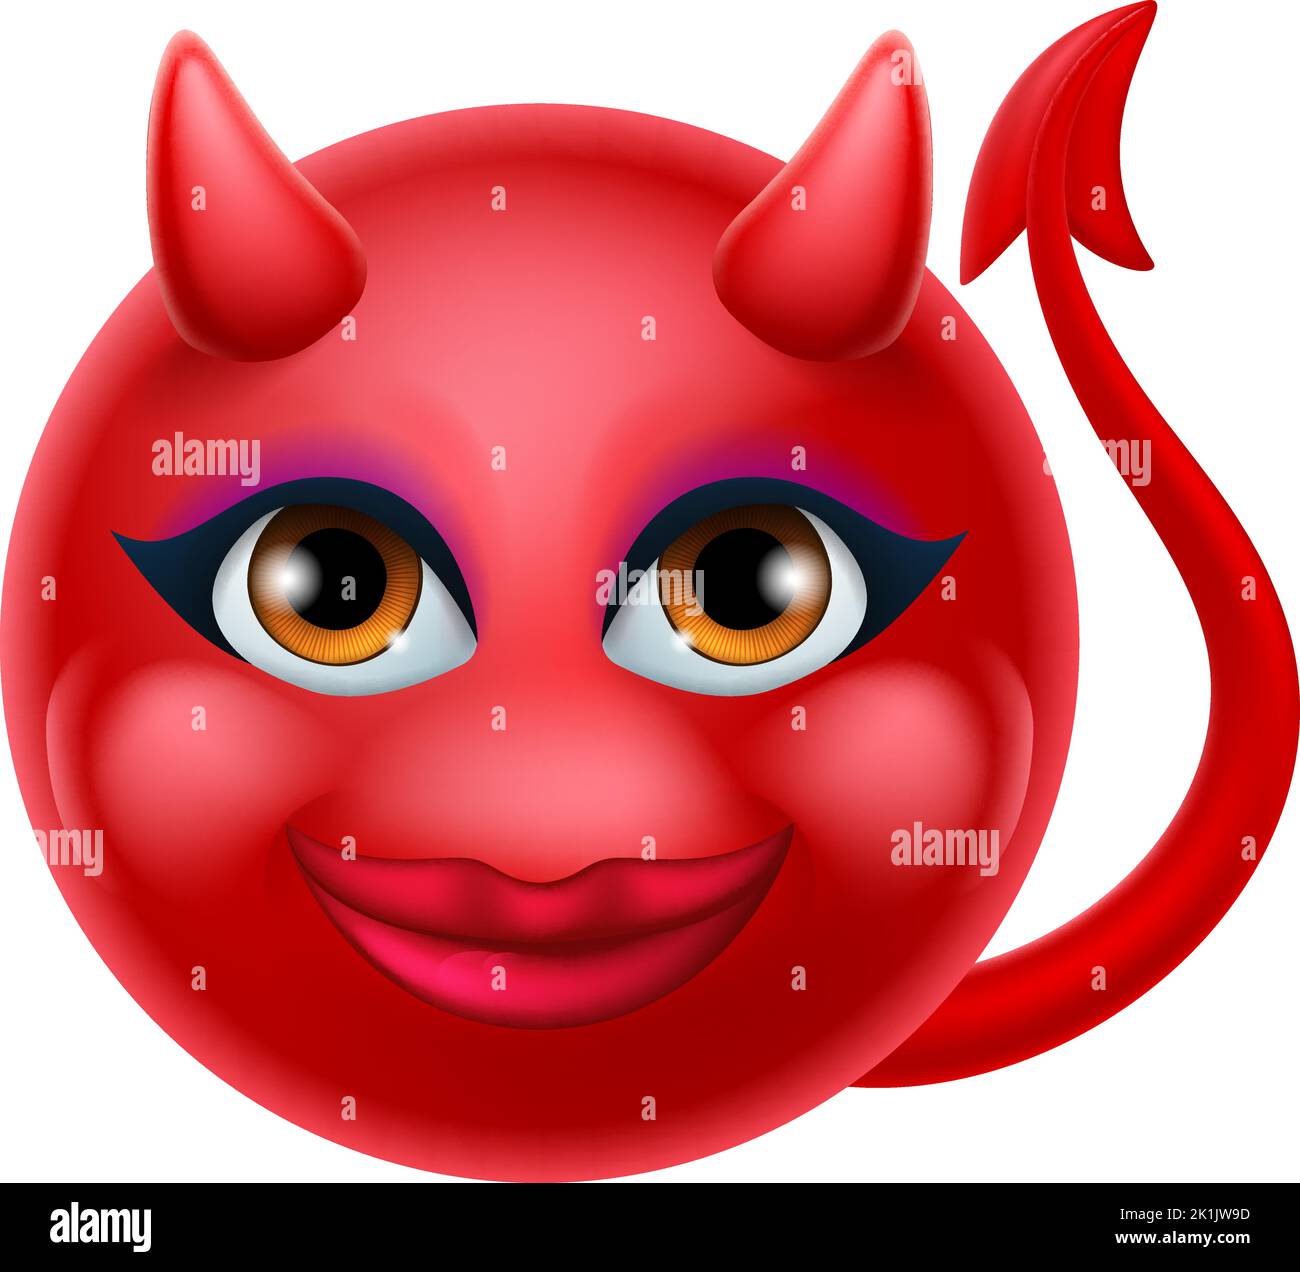 Diable Emoji Emoticon Homme visage Cartoon icône Mascot Illustration de Vecteur